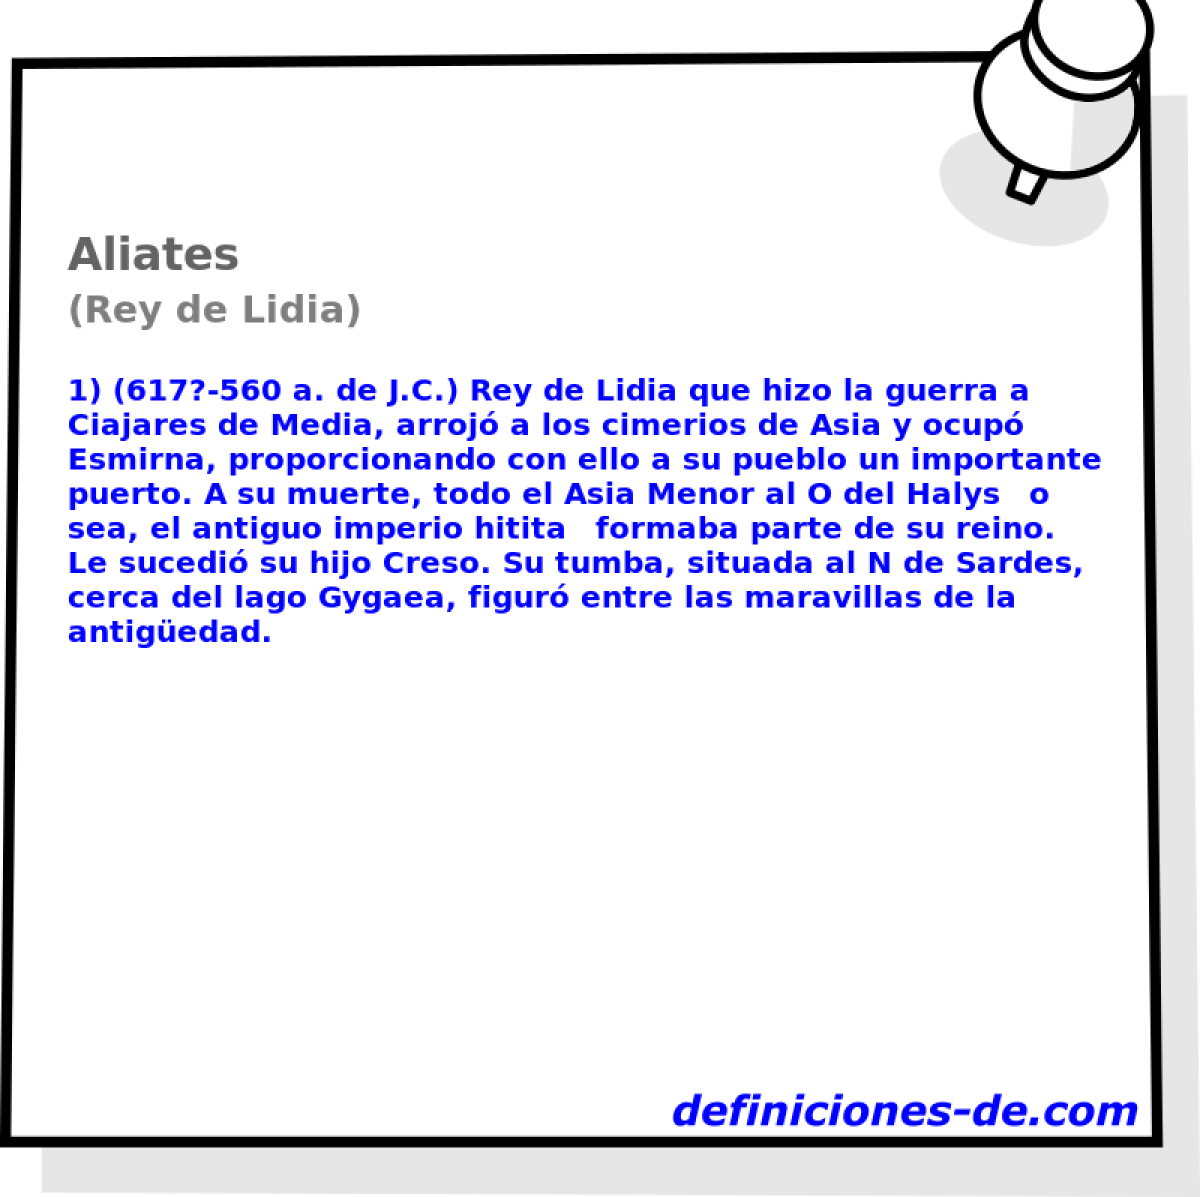 Aliates (Rey de Lidia)